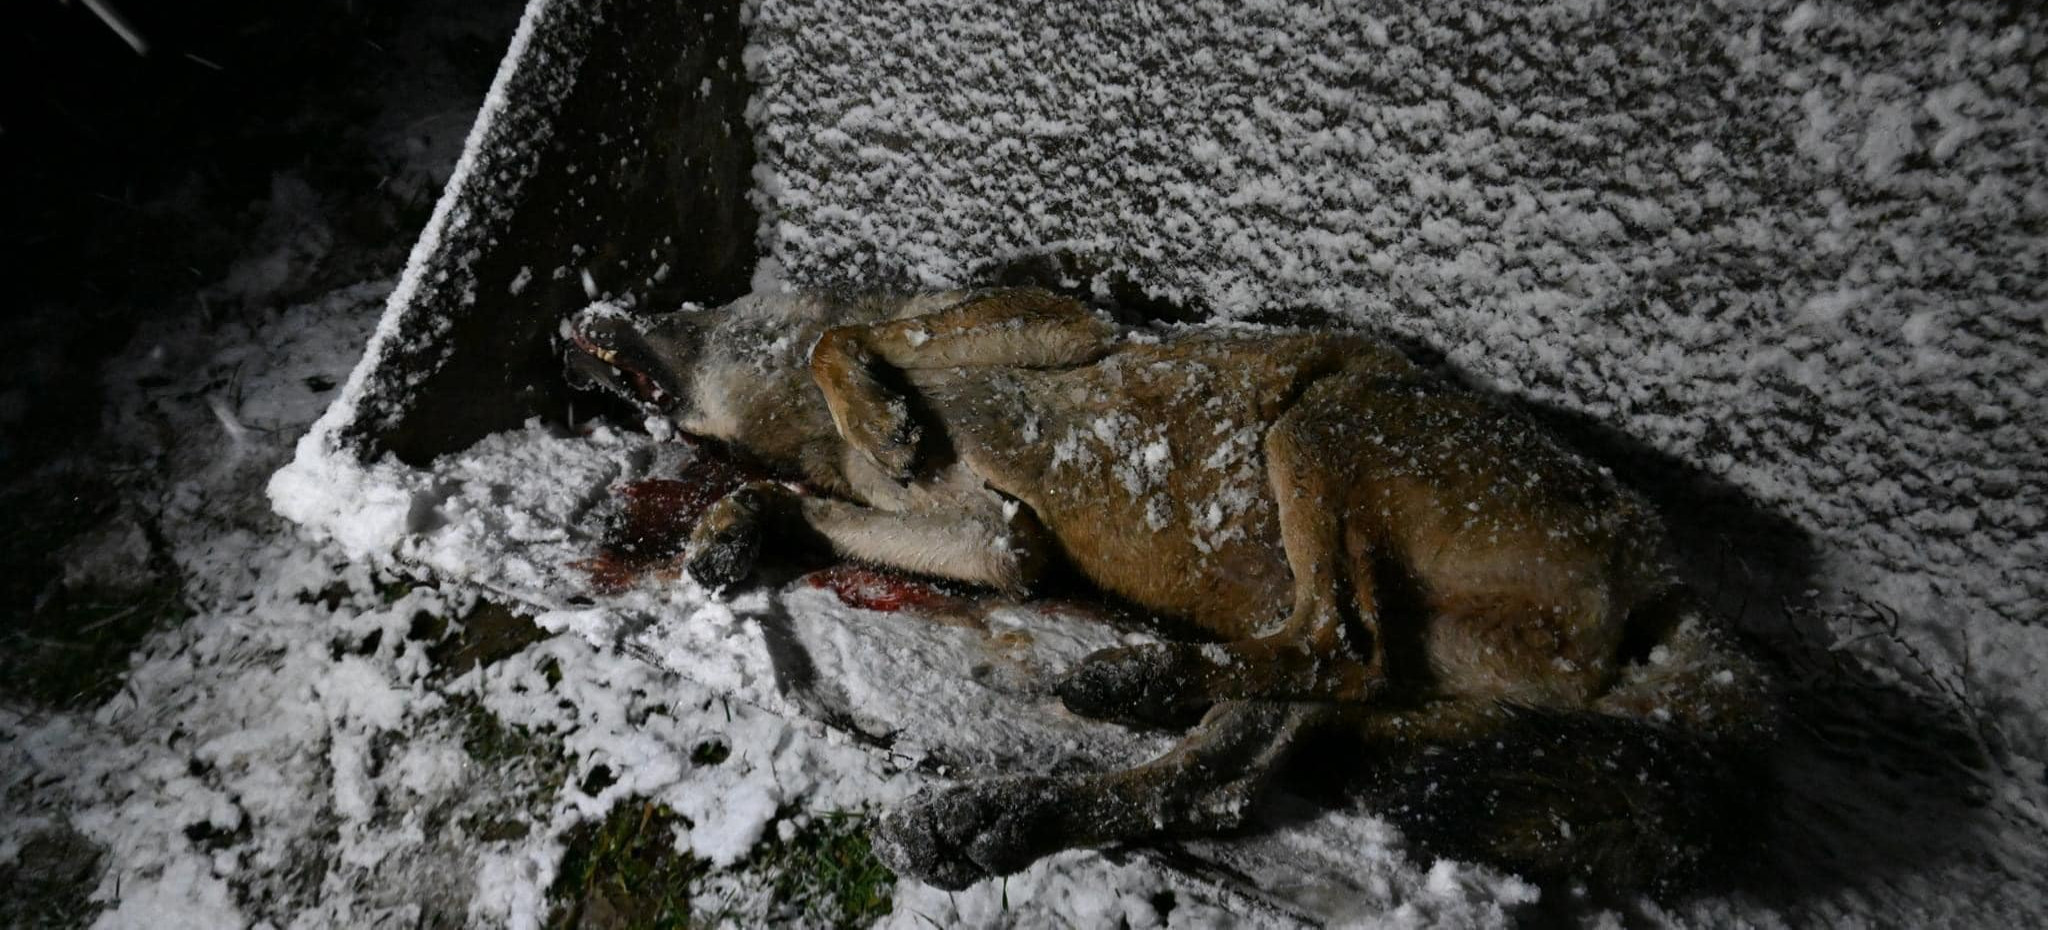 BESKID NISKI: Zastrzelono wilka podczas polowań łowieckich. Jedna osoba zatrzymana